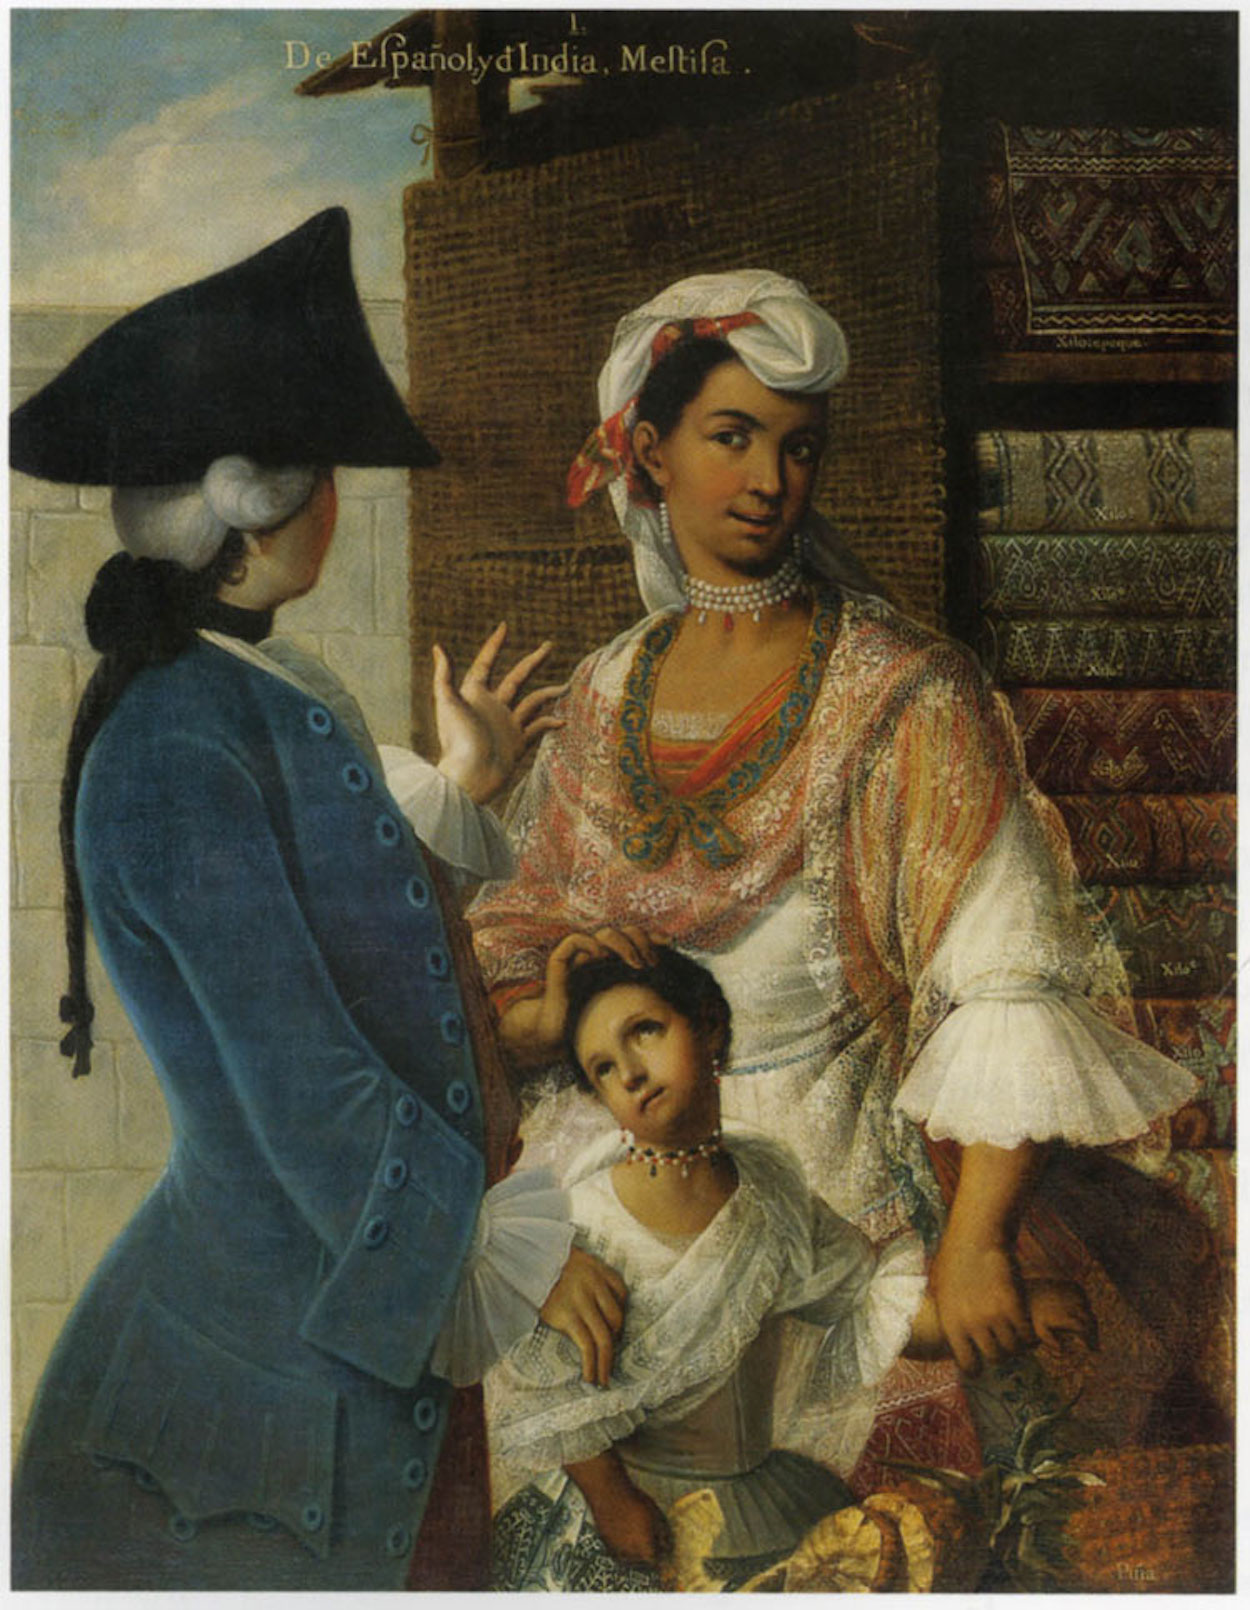 De Espagnõl e India, Mestiza by Miguel Mateo Maldonado y Cabrera - ok. 1763 